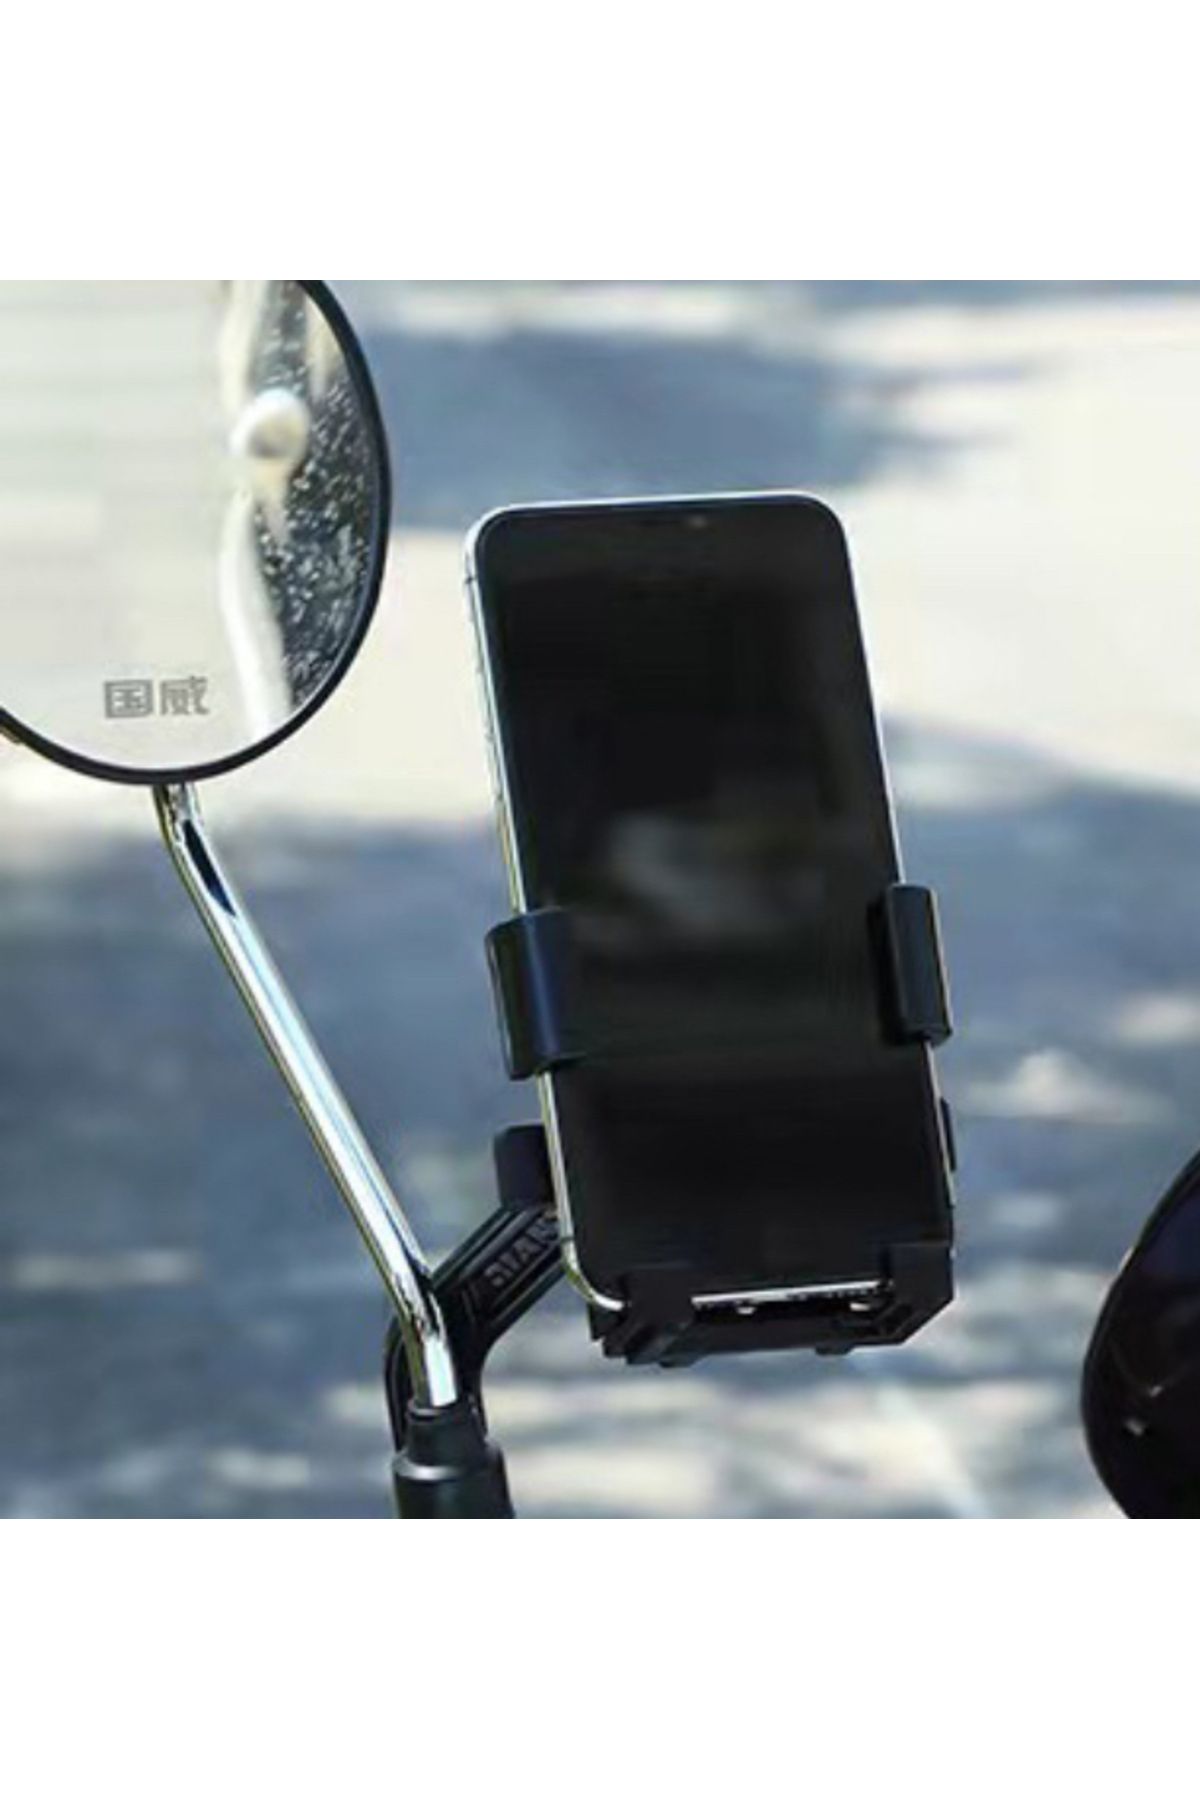 asua Dikiz Ayna Bağlantılı Otomatik Motosiklet ve Bisiklet Telefon Tutucu Motorsiklet Telefon Tutacağı